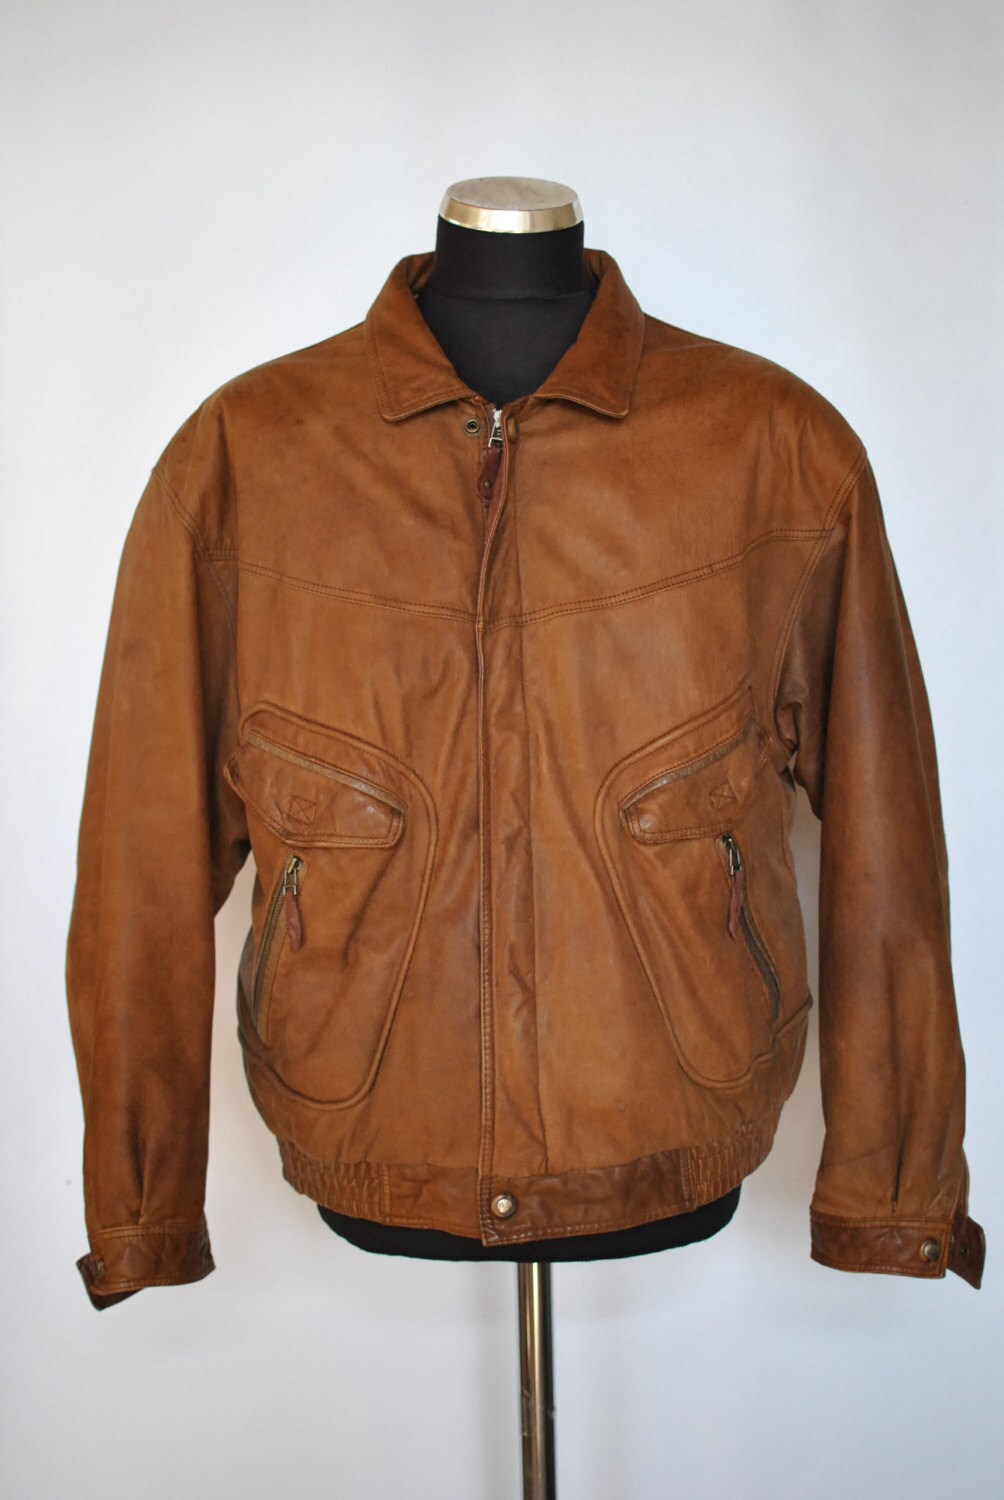 Vintage TRAPPER BOMBER LEATHER jacket with advance vintage